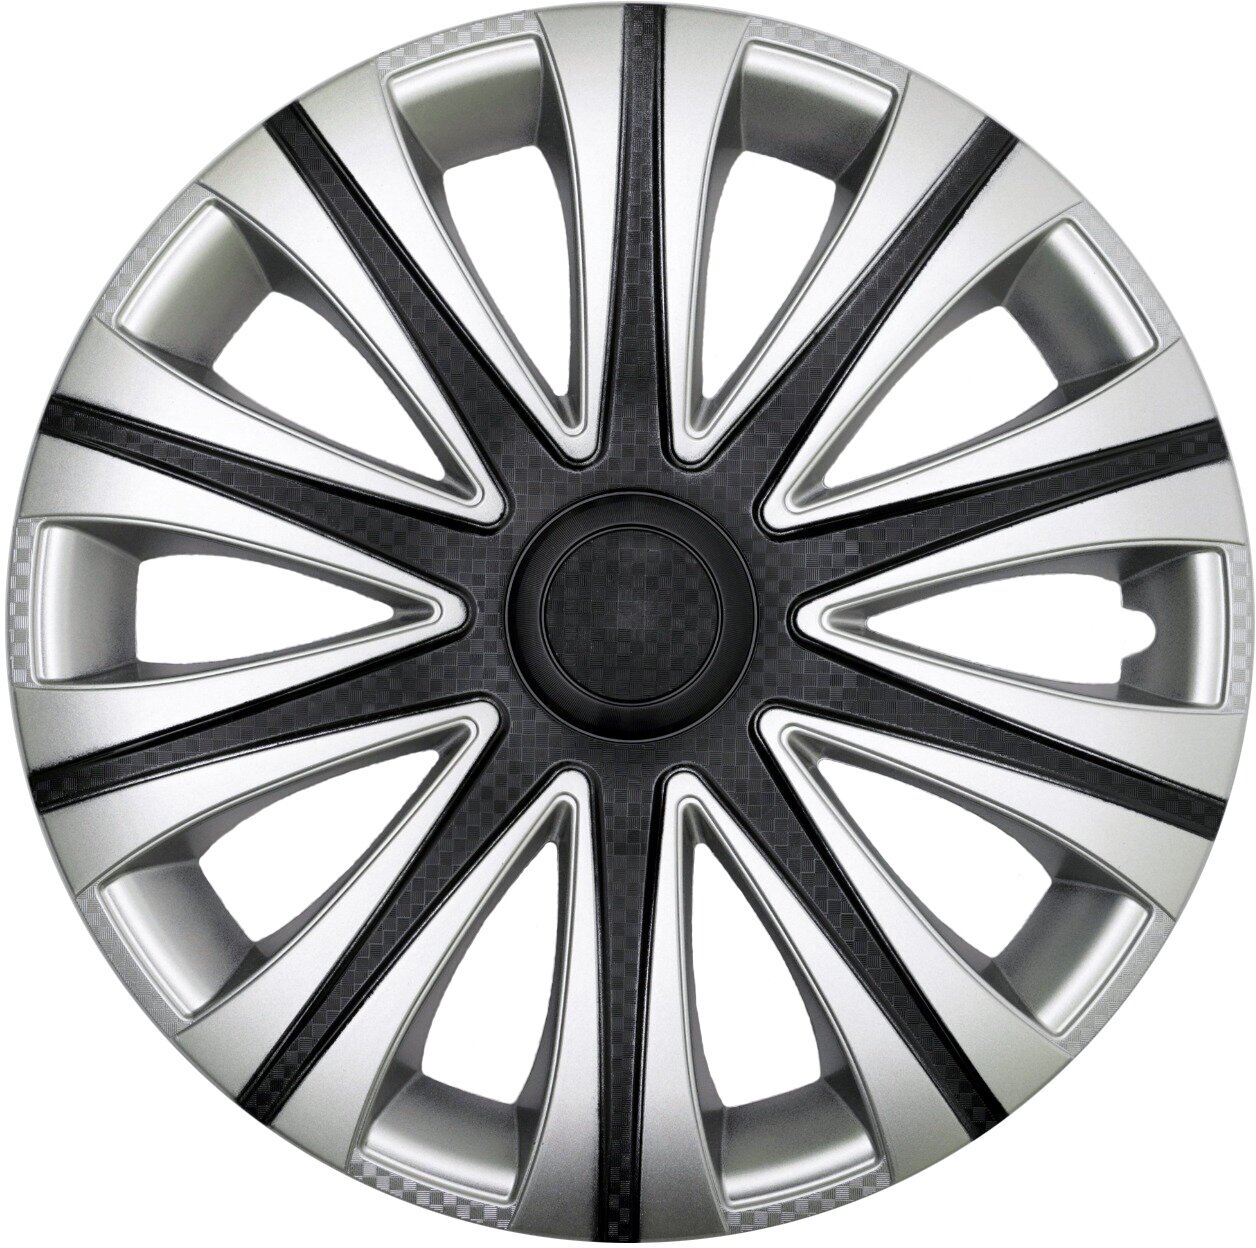 Колпаки R14 4шт на колеса авто MАЙ SUPER BLACK р14 на диски радиус 14 дюймов цвет серый серебристый черный карбон.